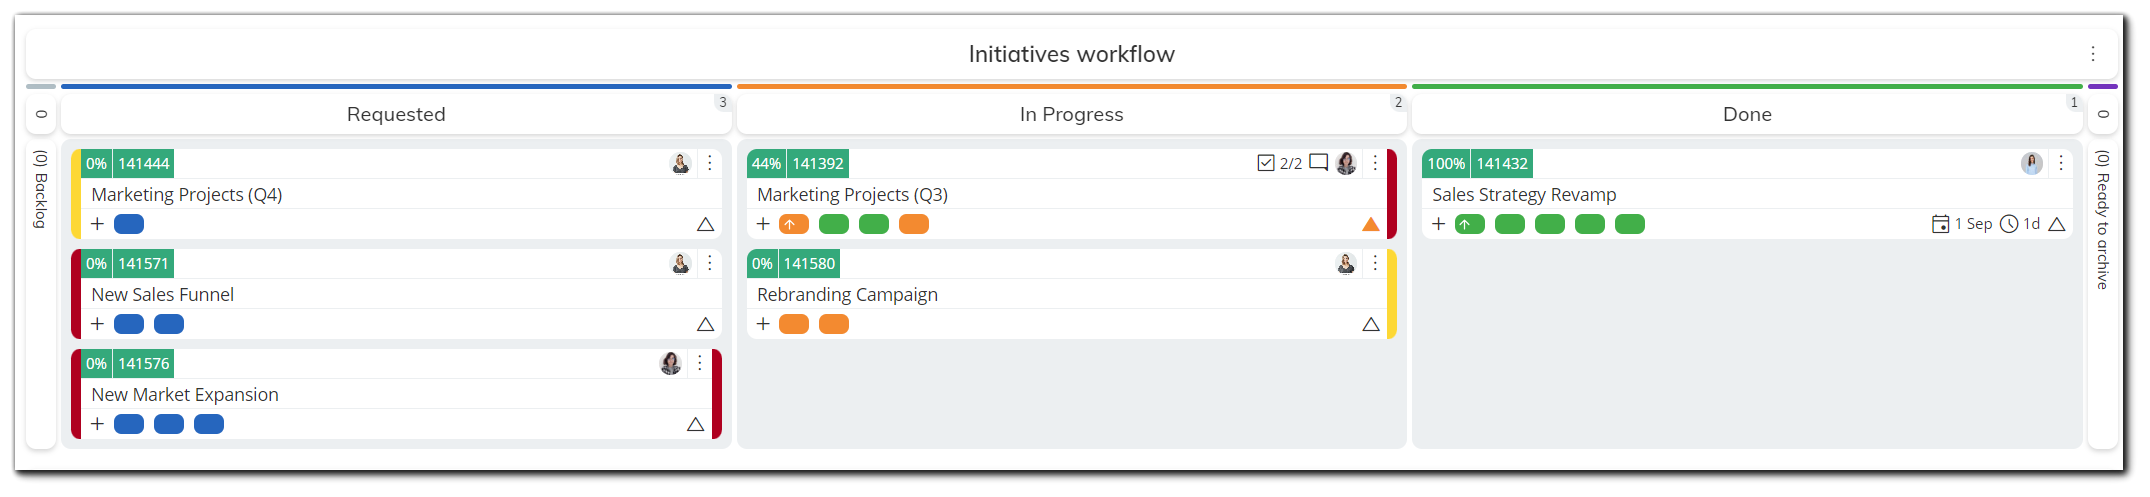 portfolio-initiative-delay-progress-bar.png